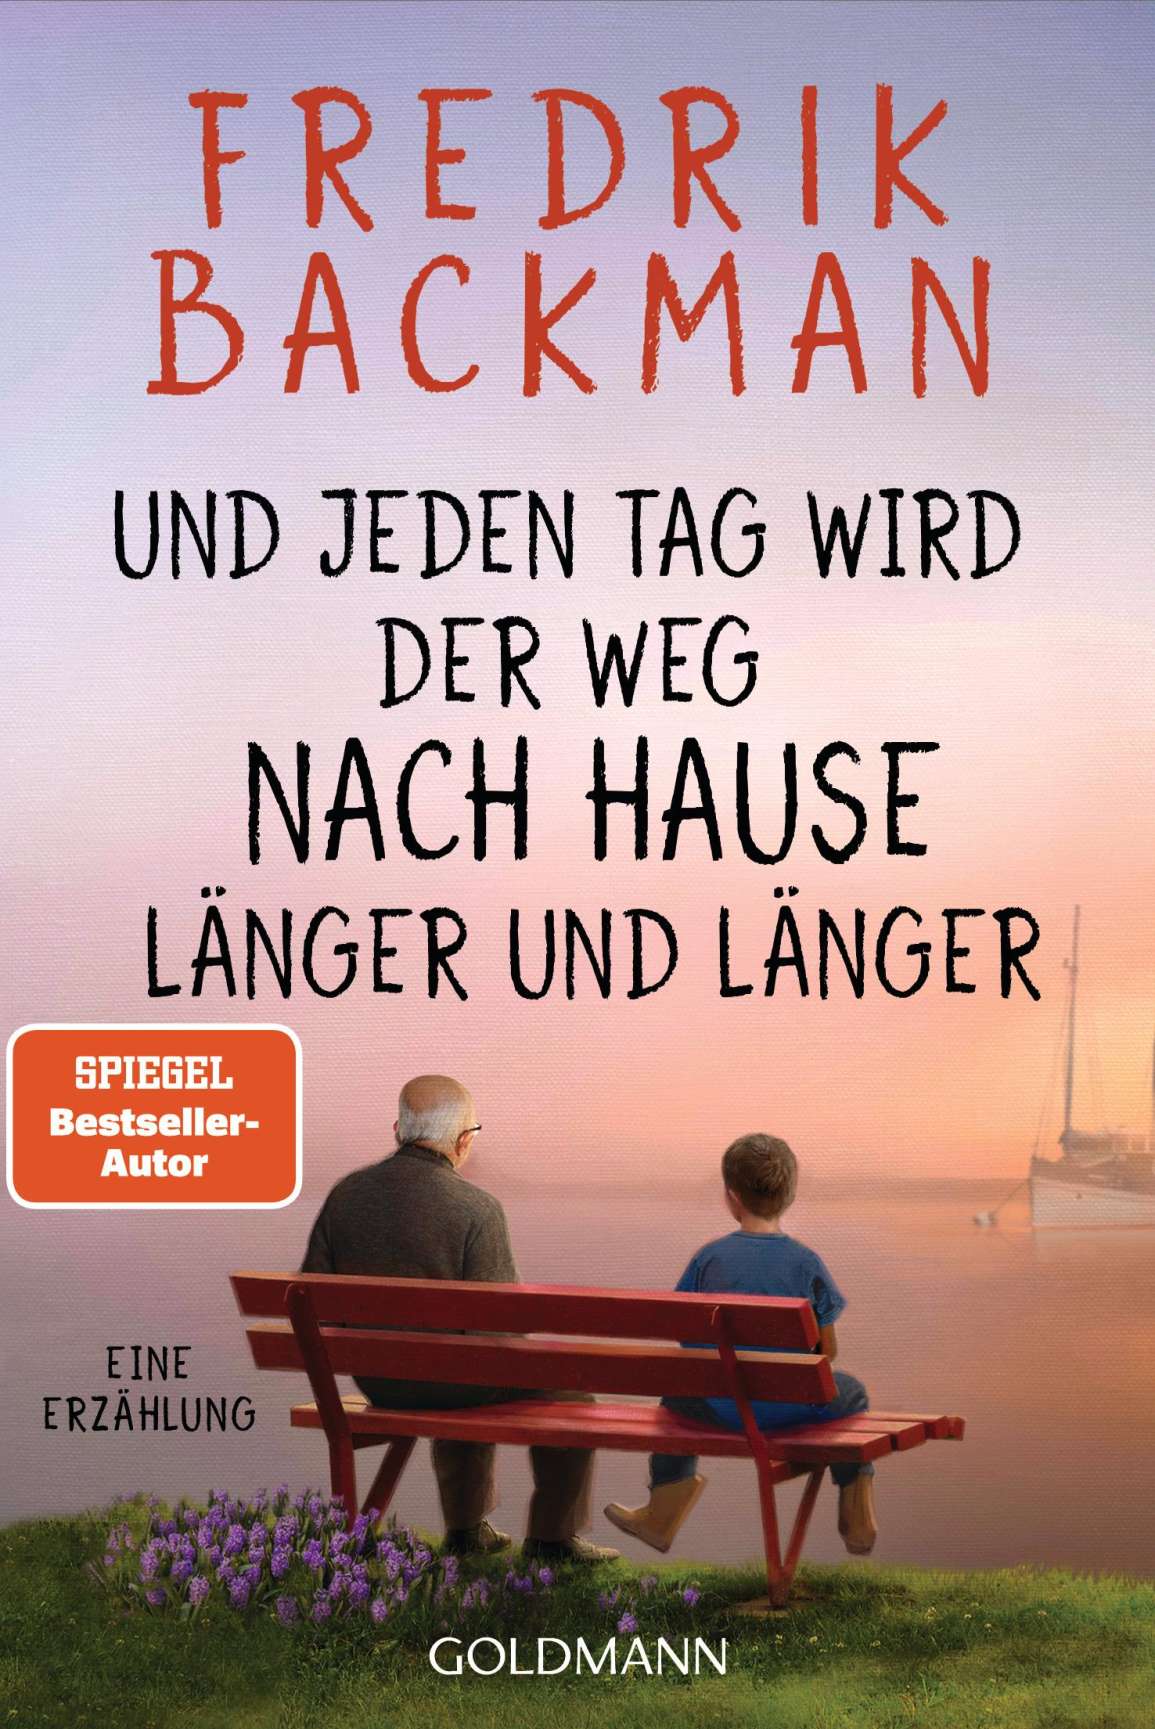 Publisher Goldmann - Und Jeden tag Wird der weg Nach Hause Länger und Länger - Fredrik Backman